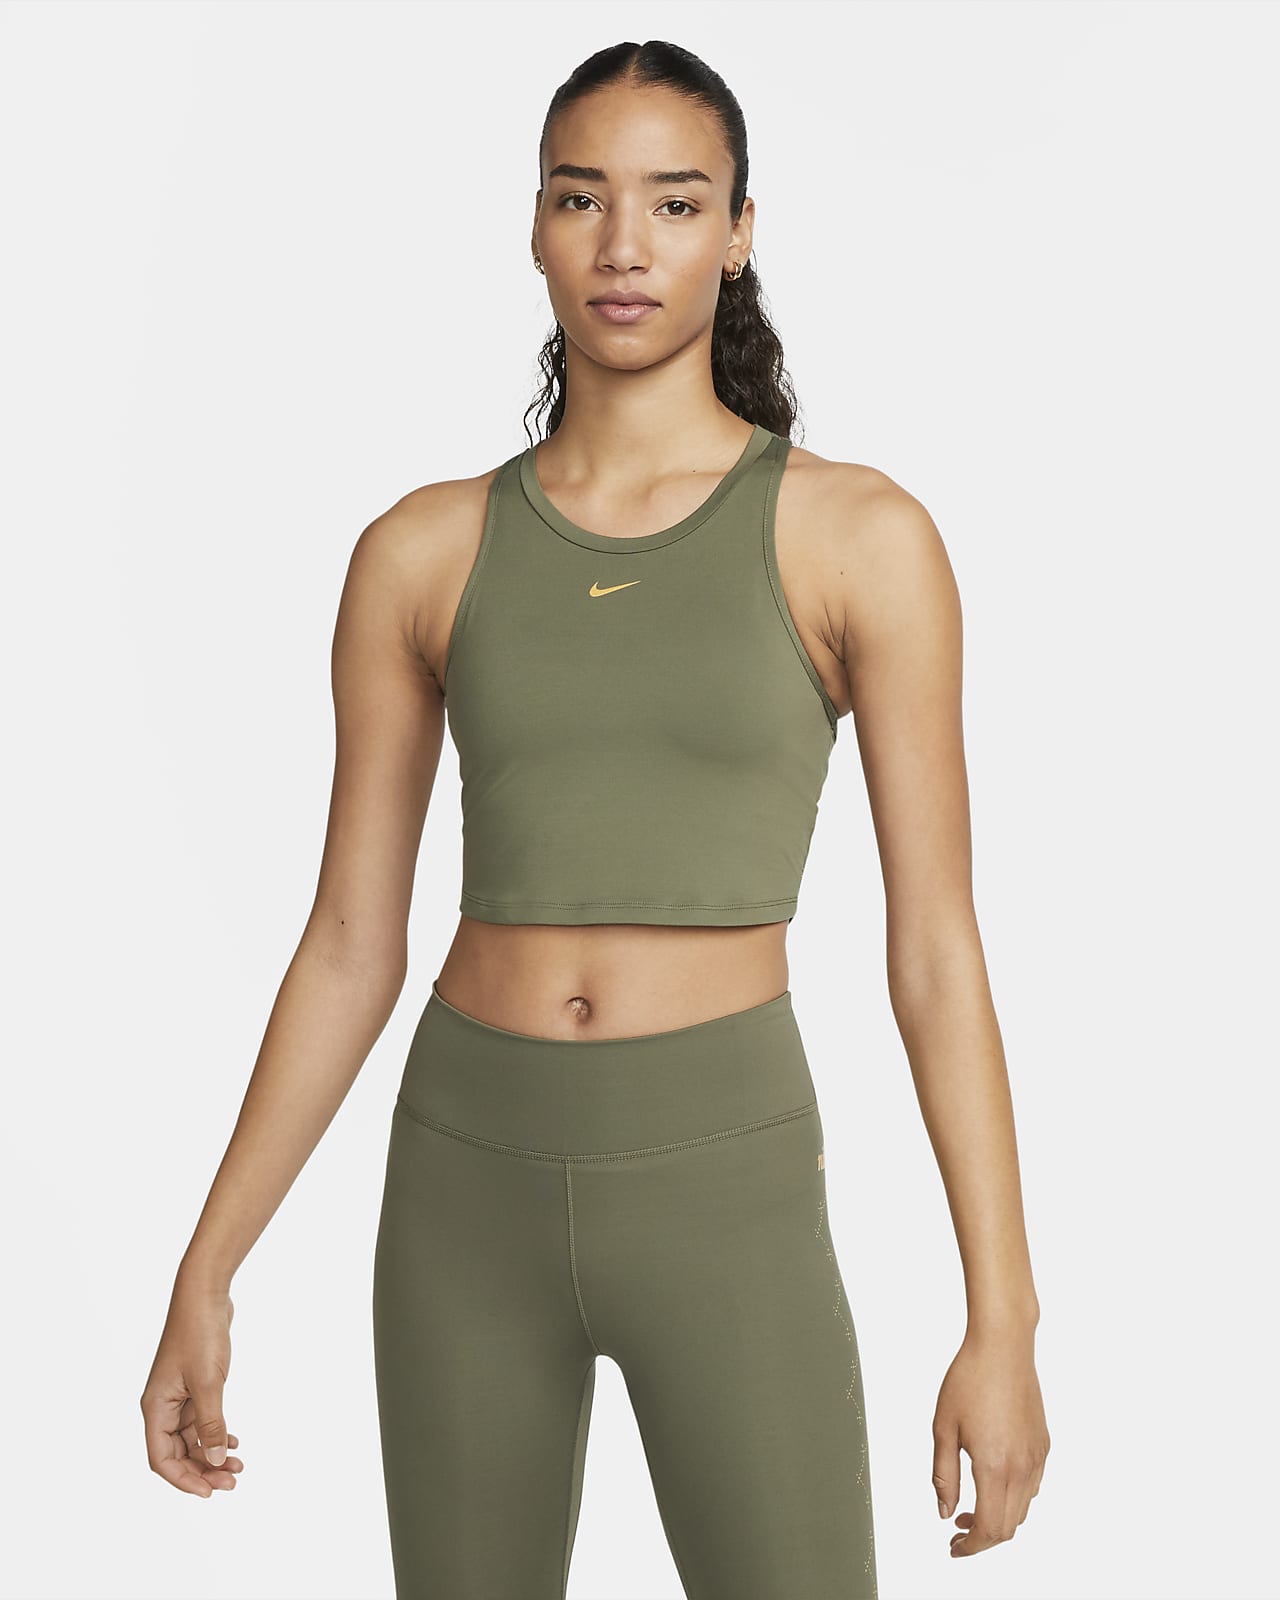 Nike Dri-FIT One Luxe Women's Slim Tank.